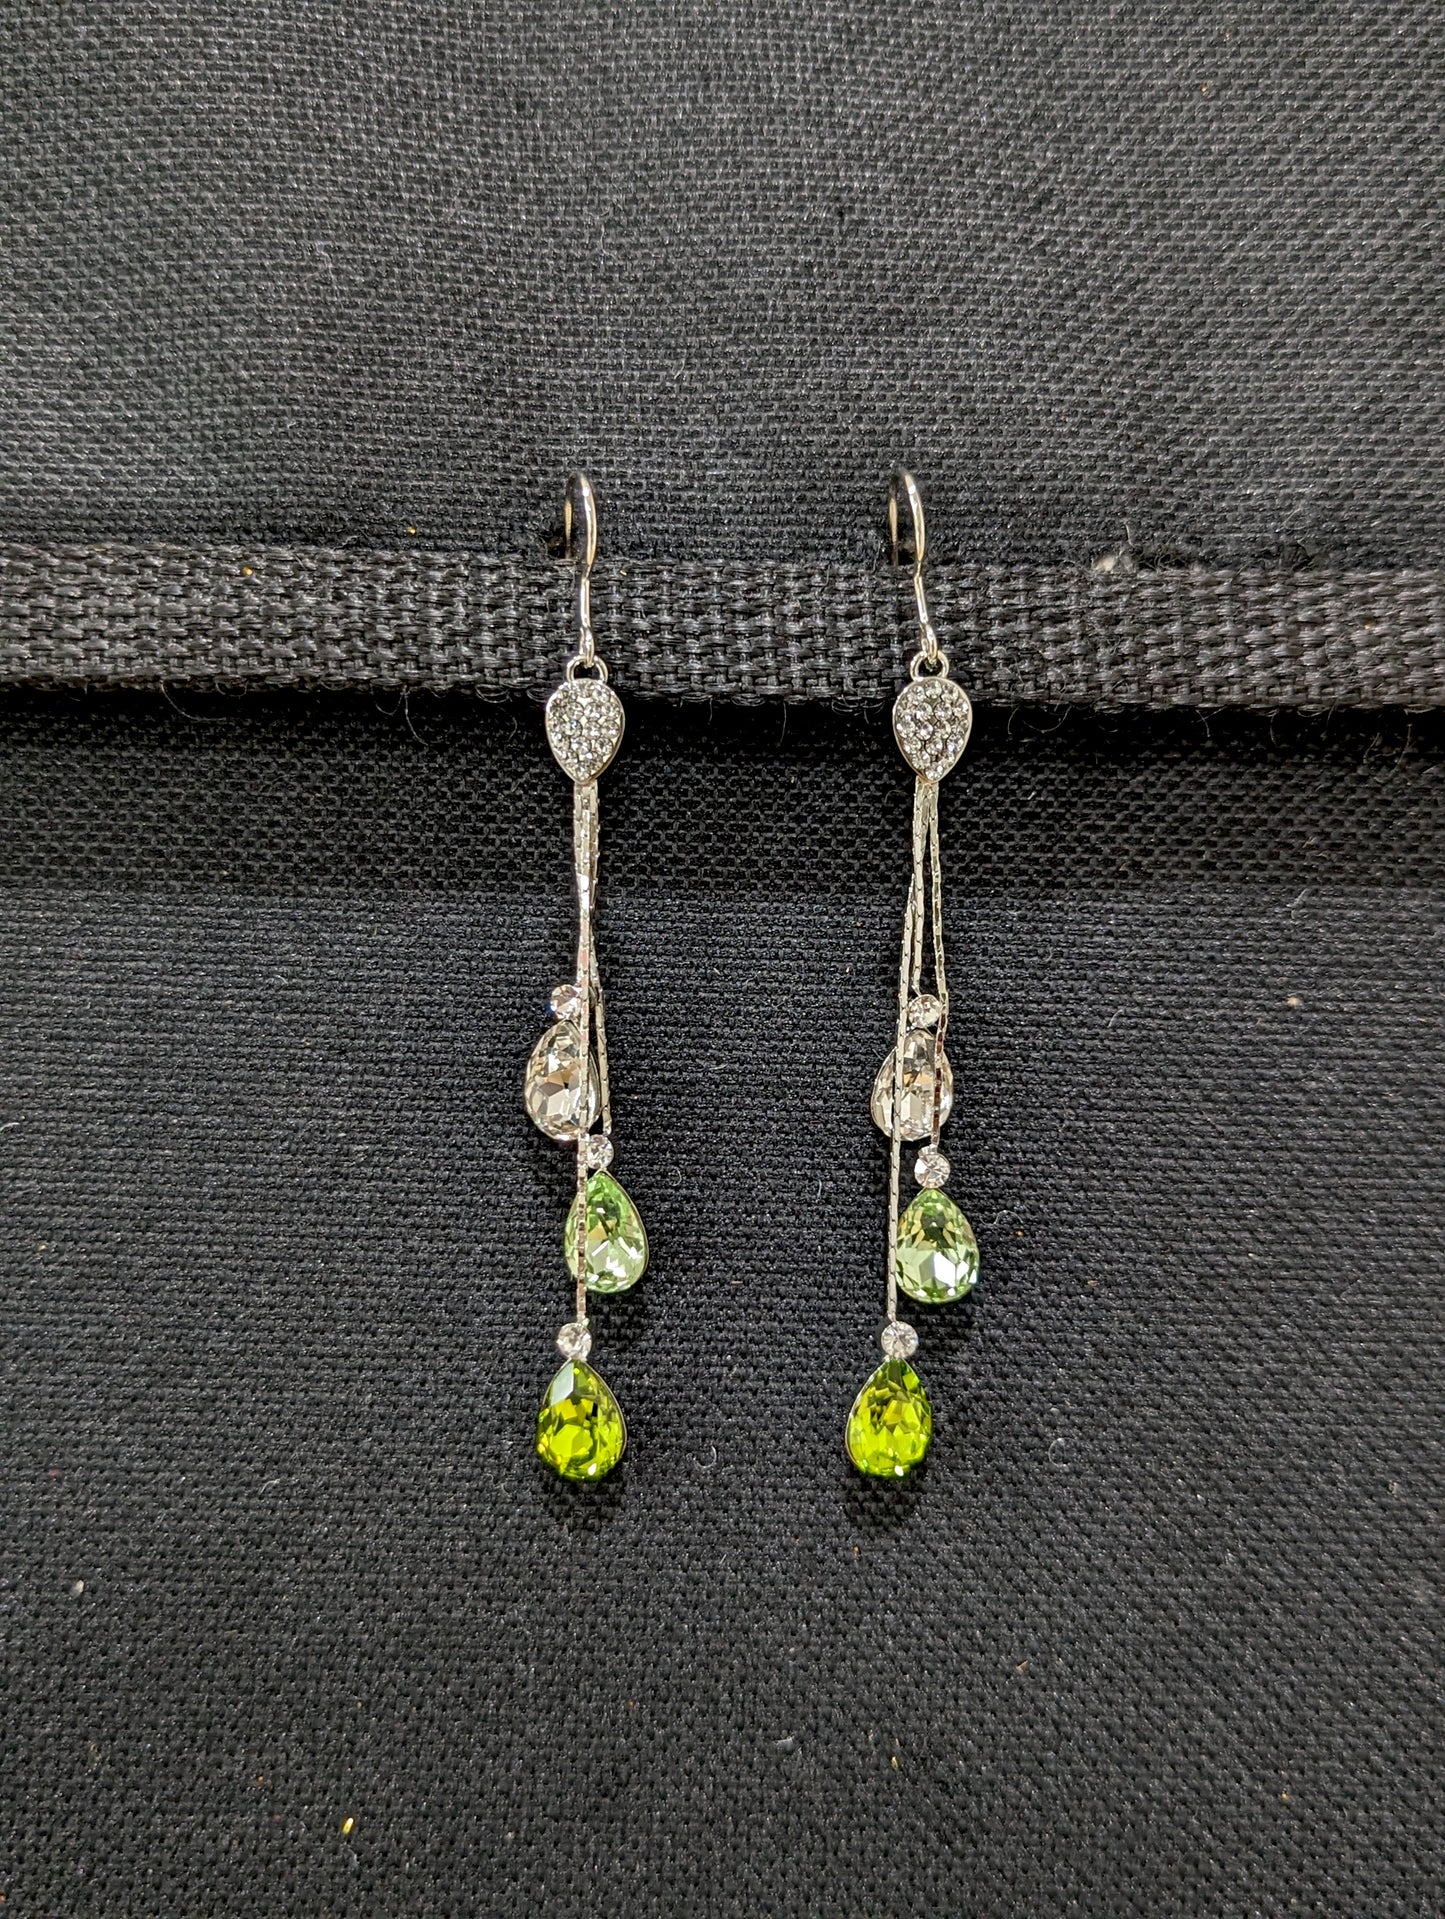 Austrian Crystal embedded Long dangling hook drop Earring - Simpliful